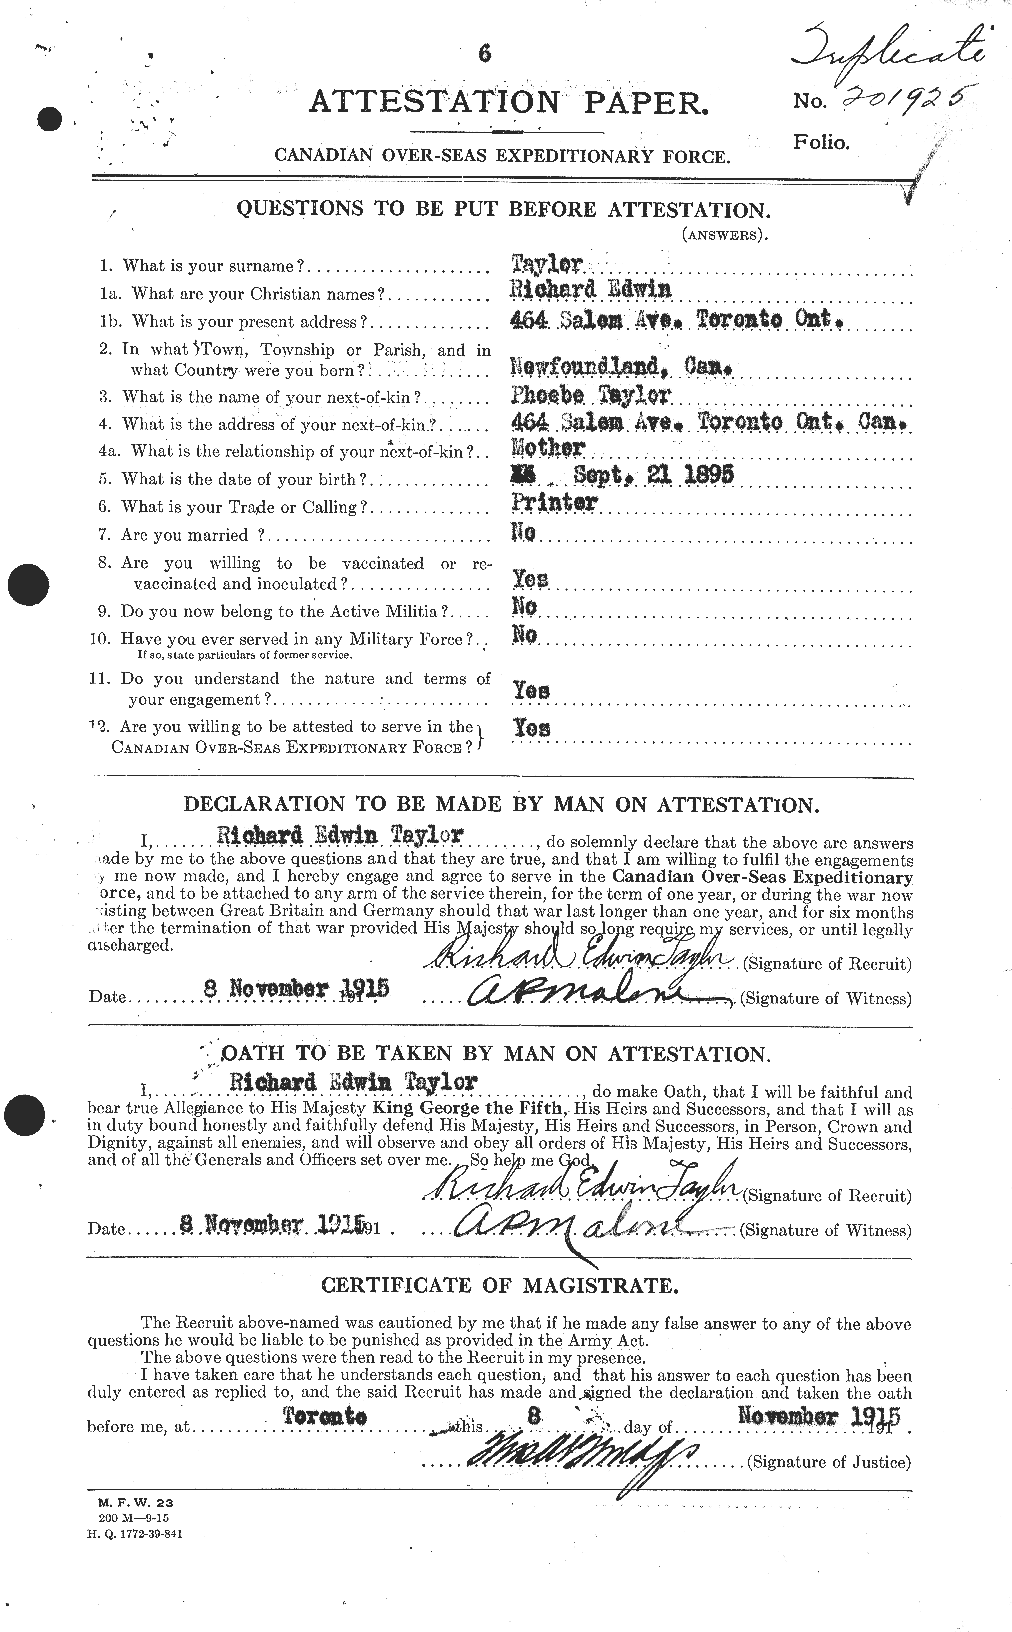 Dossiers du Personnel de la Première Guerre mondiale - CEC 627825a